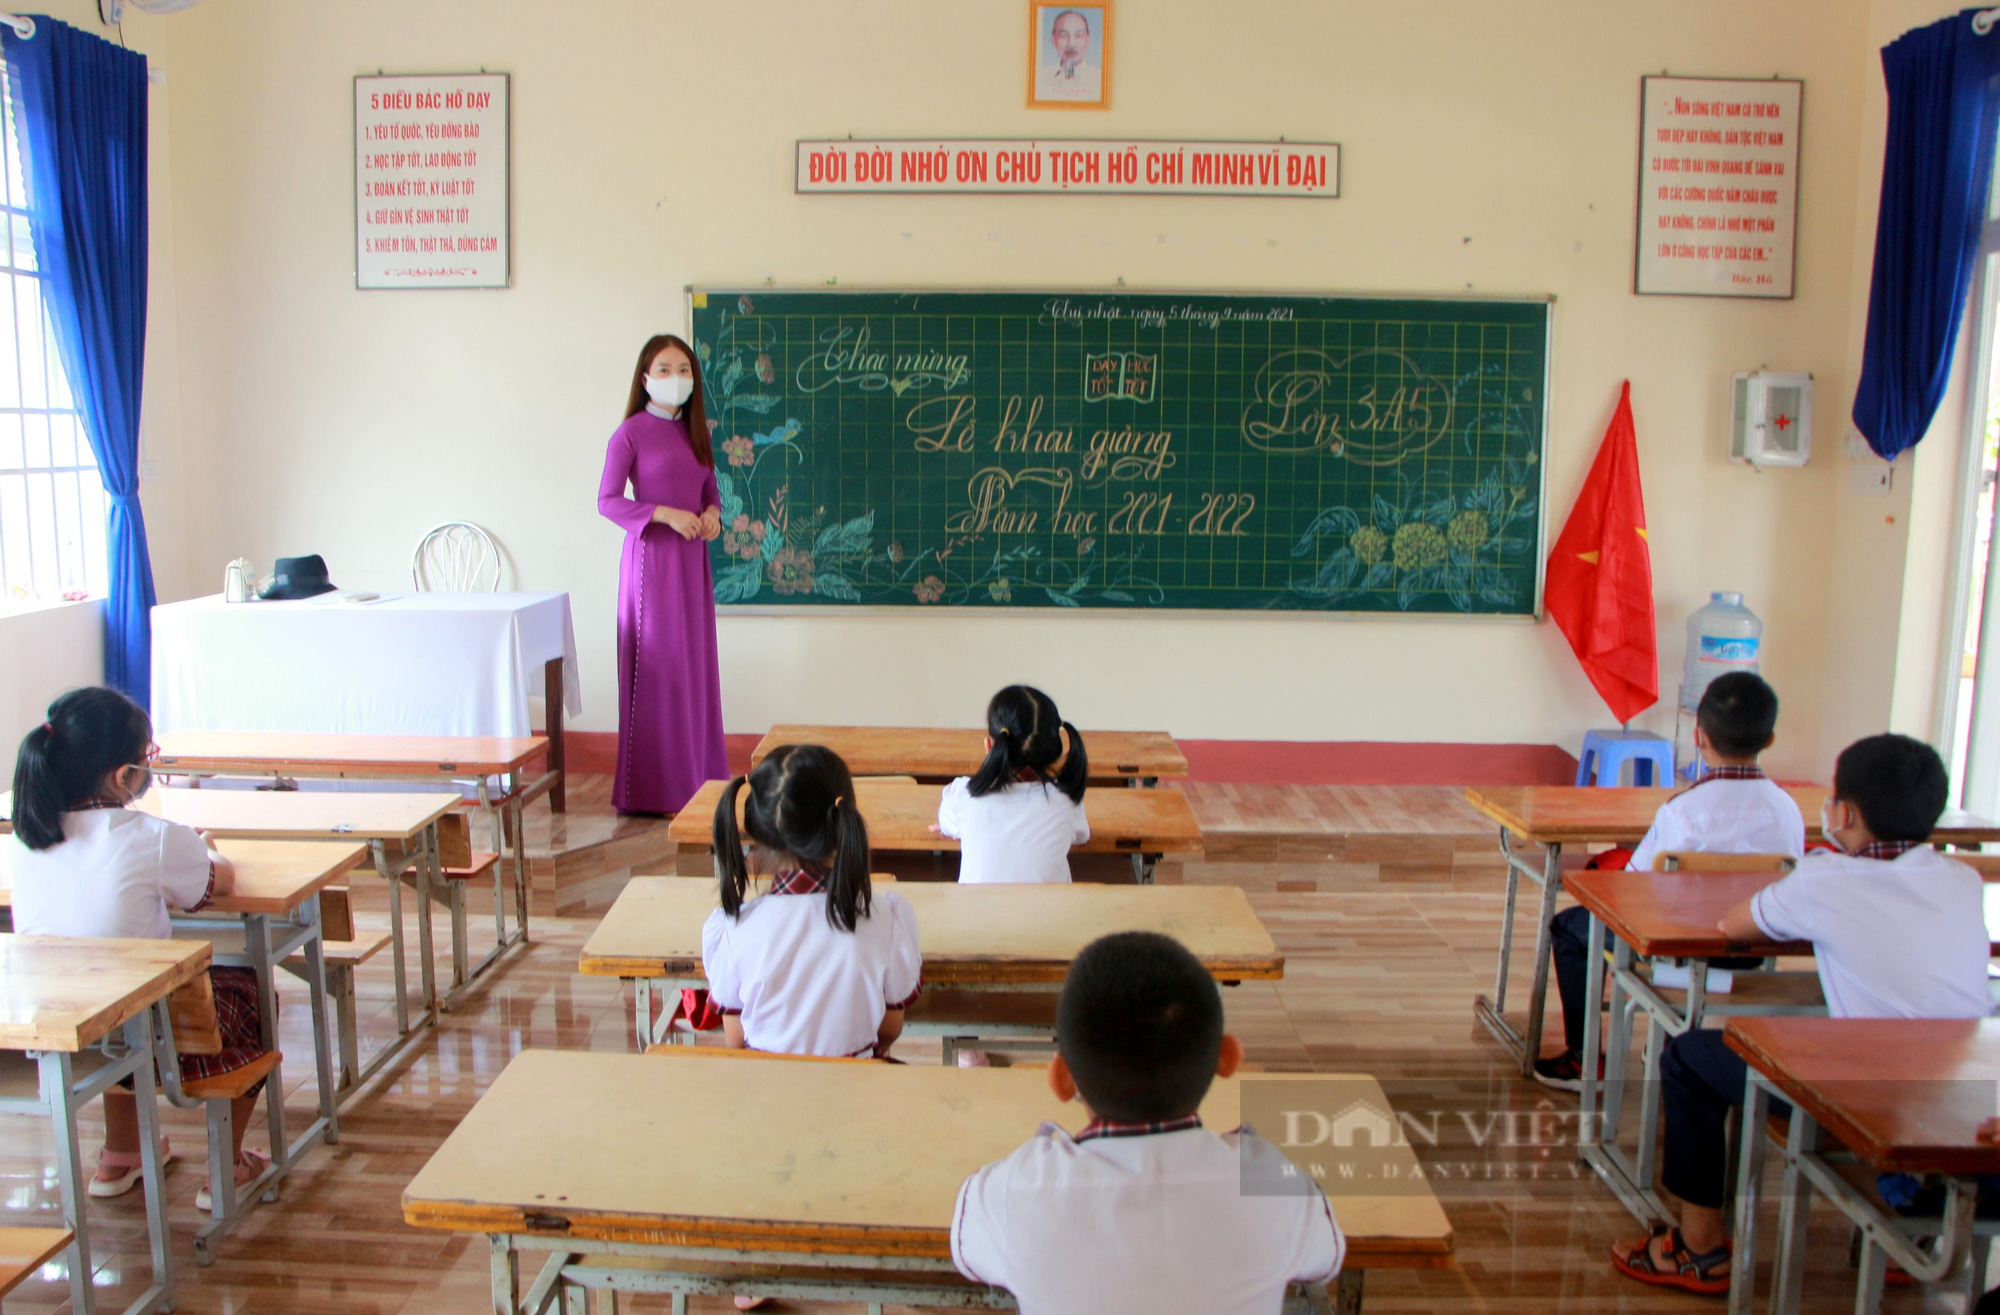 Đắk Nông: Toàn tỉnh tạm dừng dạy học trực tiếp tại trường - Ảnh 1.